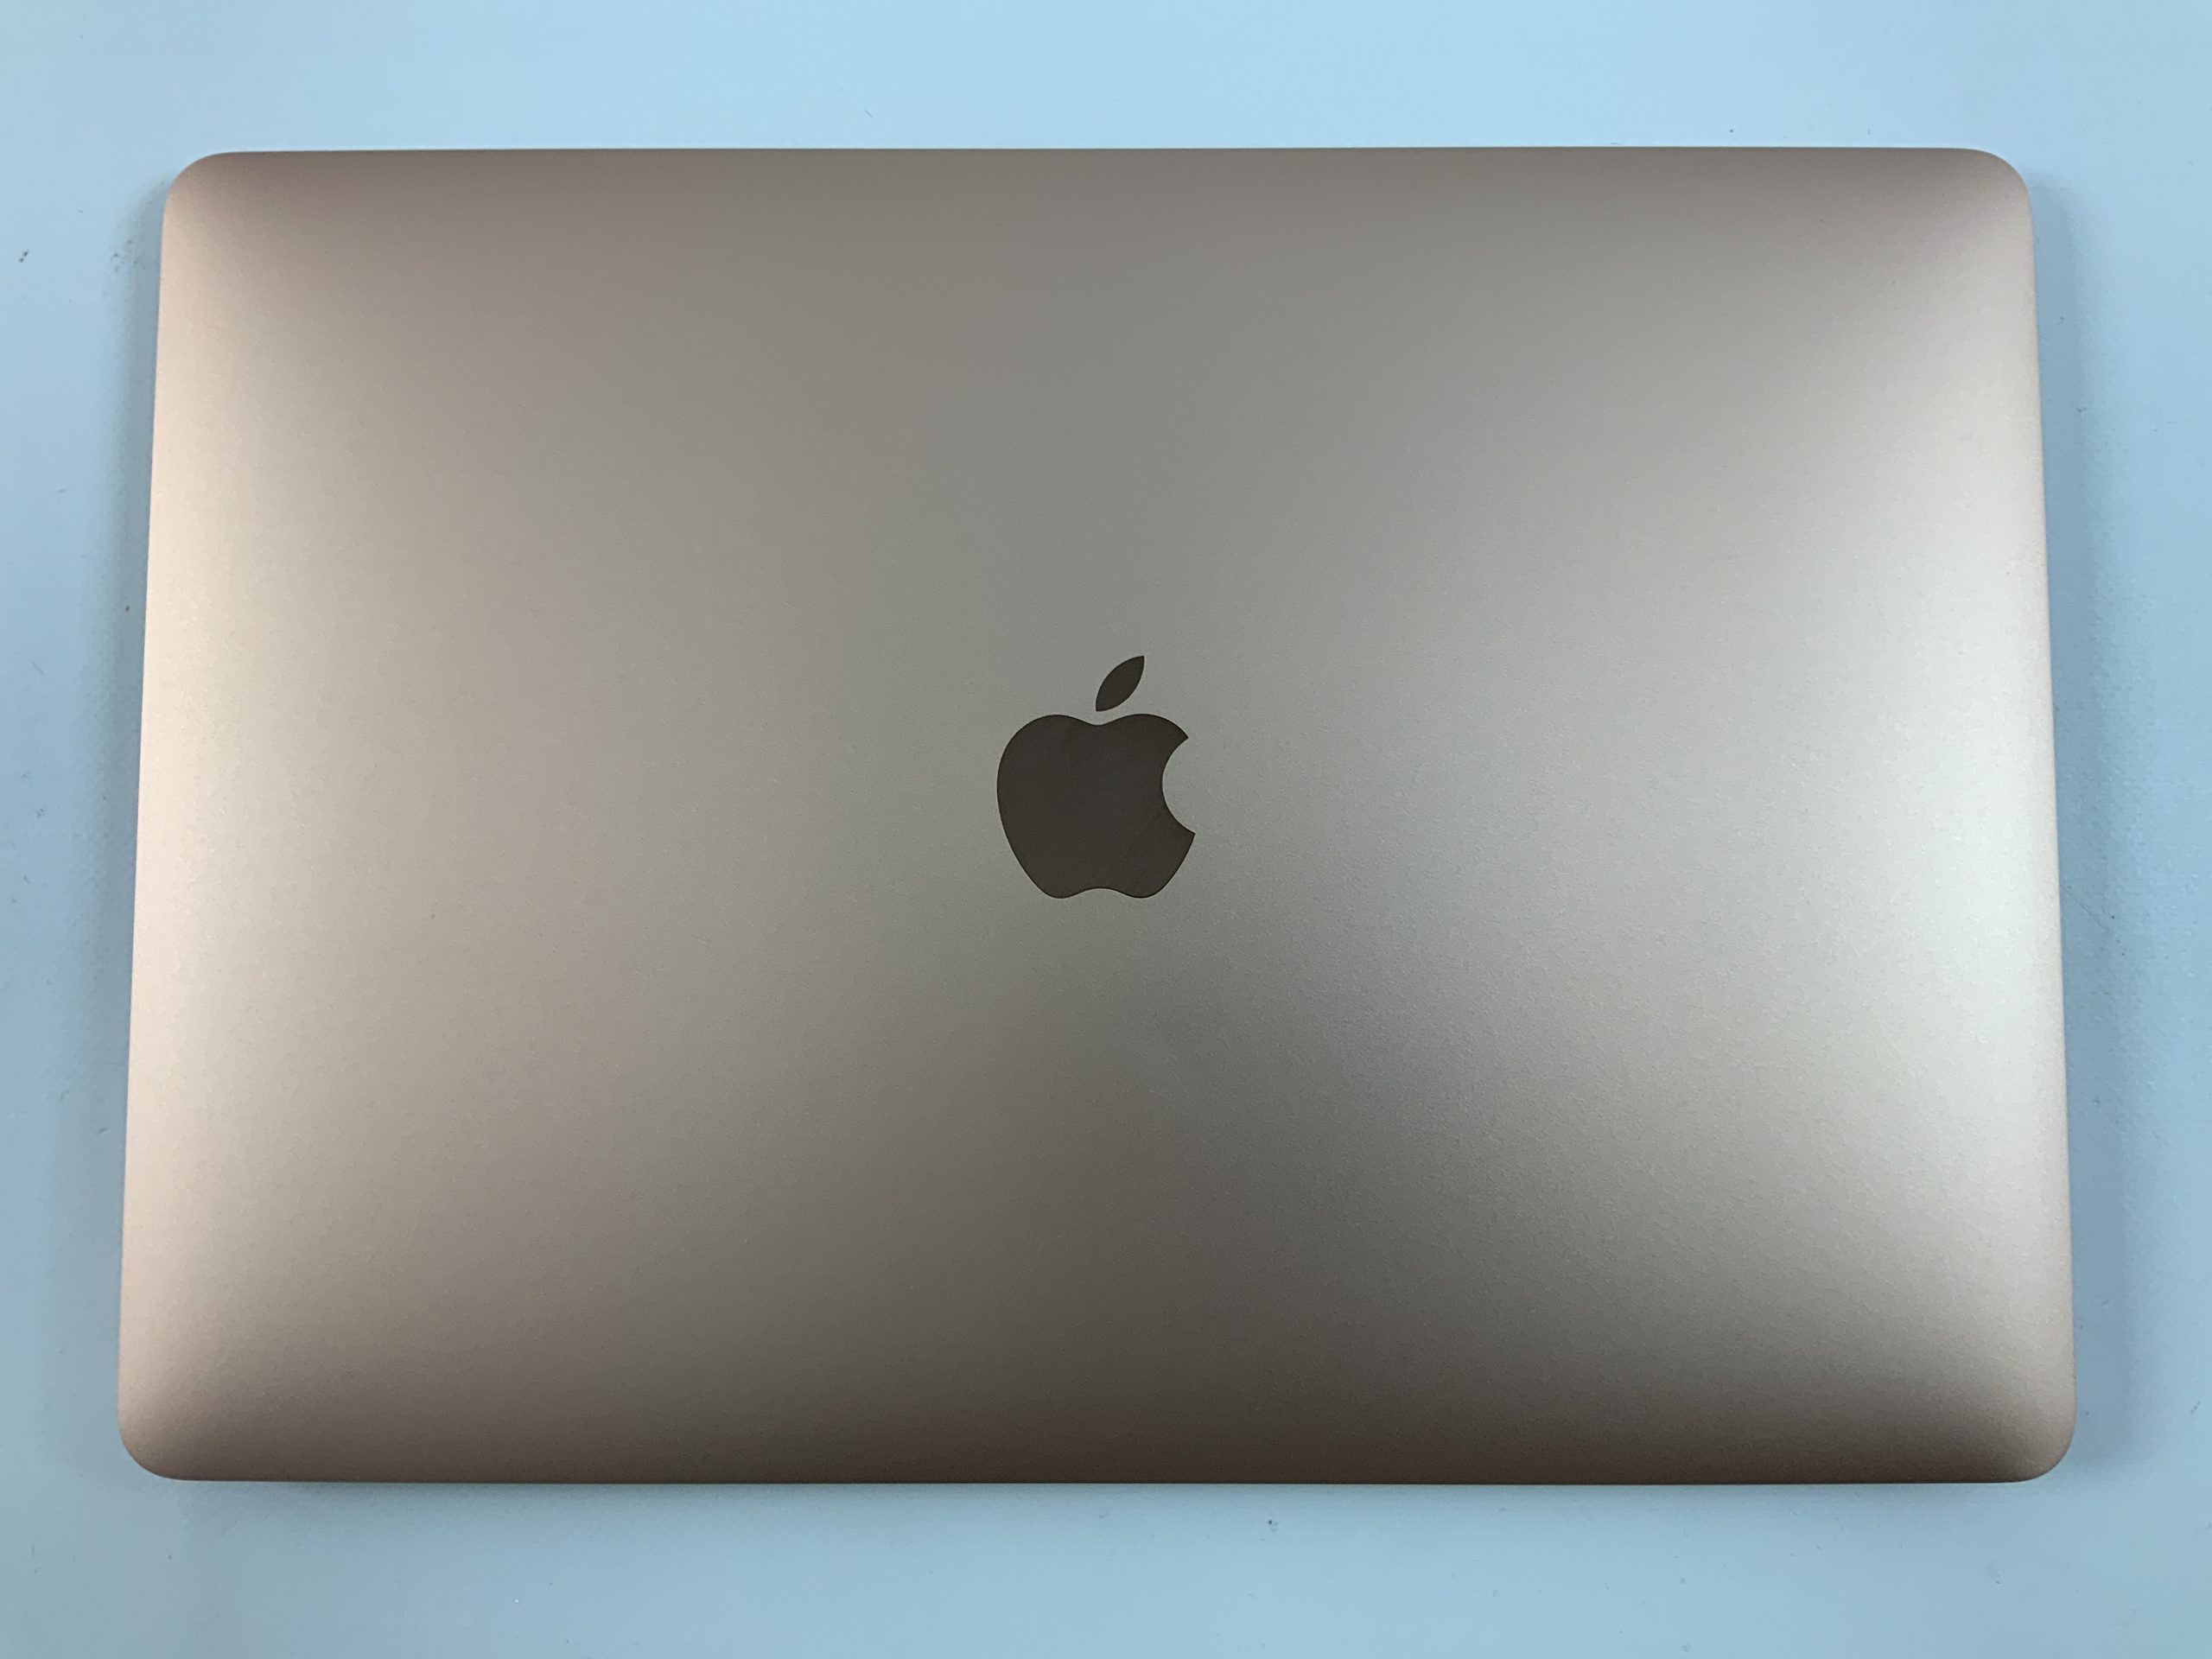 MacBook Air 13" Mid 2019 (Intel Core i5 1.6 GHz 8 GB RAM 256 GB SSD), Gold, Intel Core i5 1.6 GHz, 8 GB RAM, 256 GB SSD, immagine 2